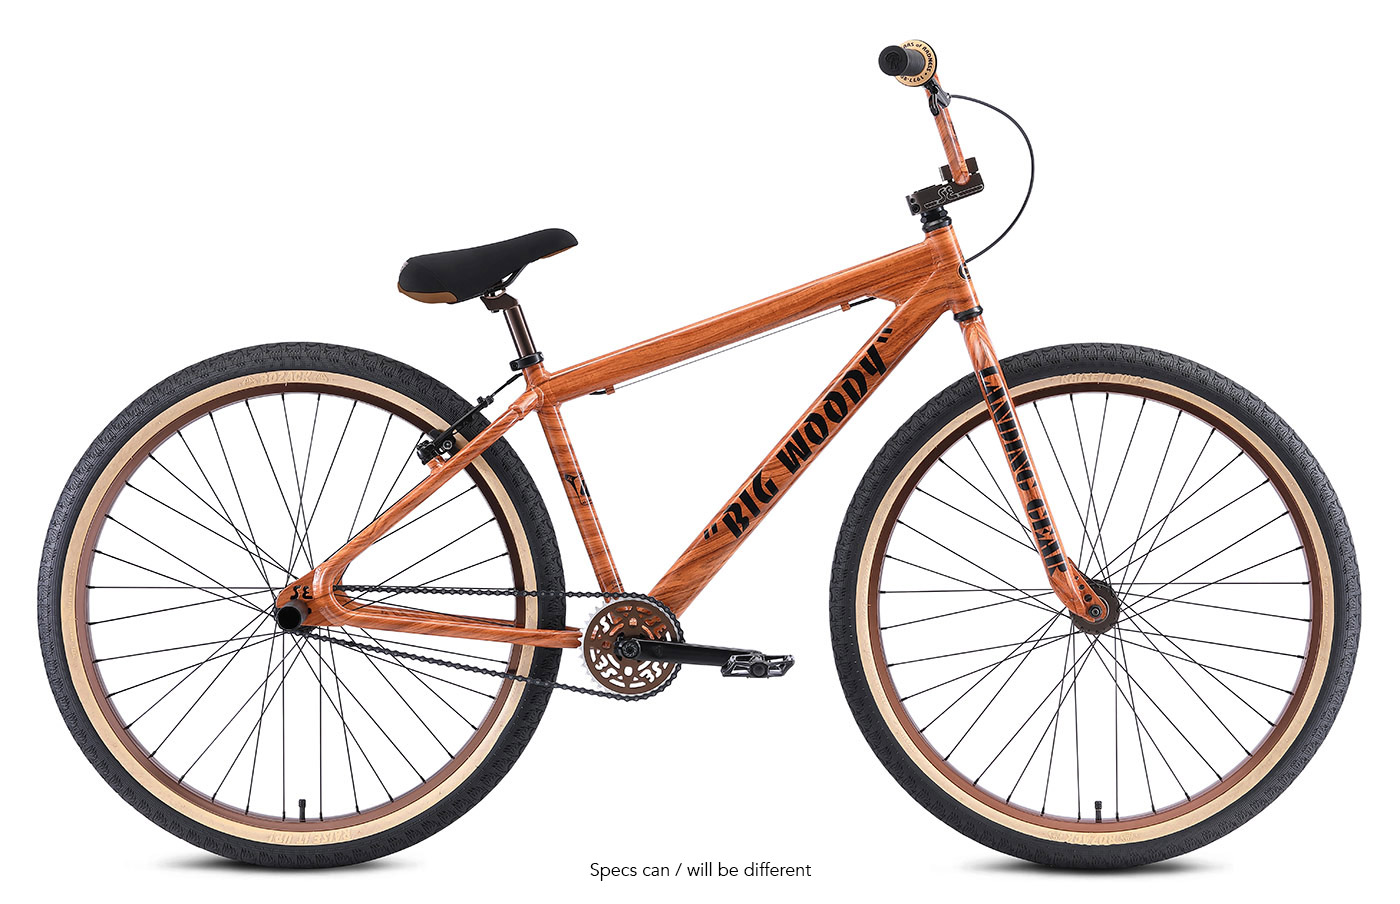 BMX enfant SE Bikes Vans lil ripper 16 2021 - Vélos - BMX